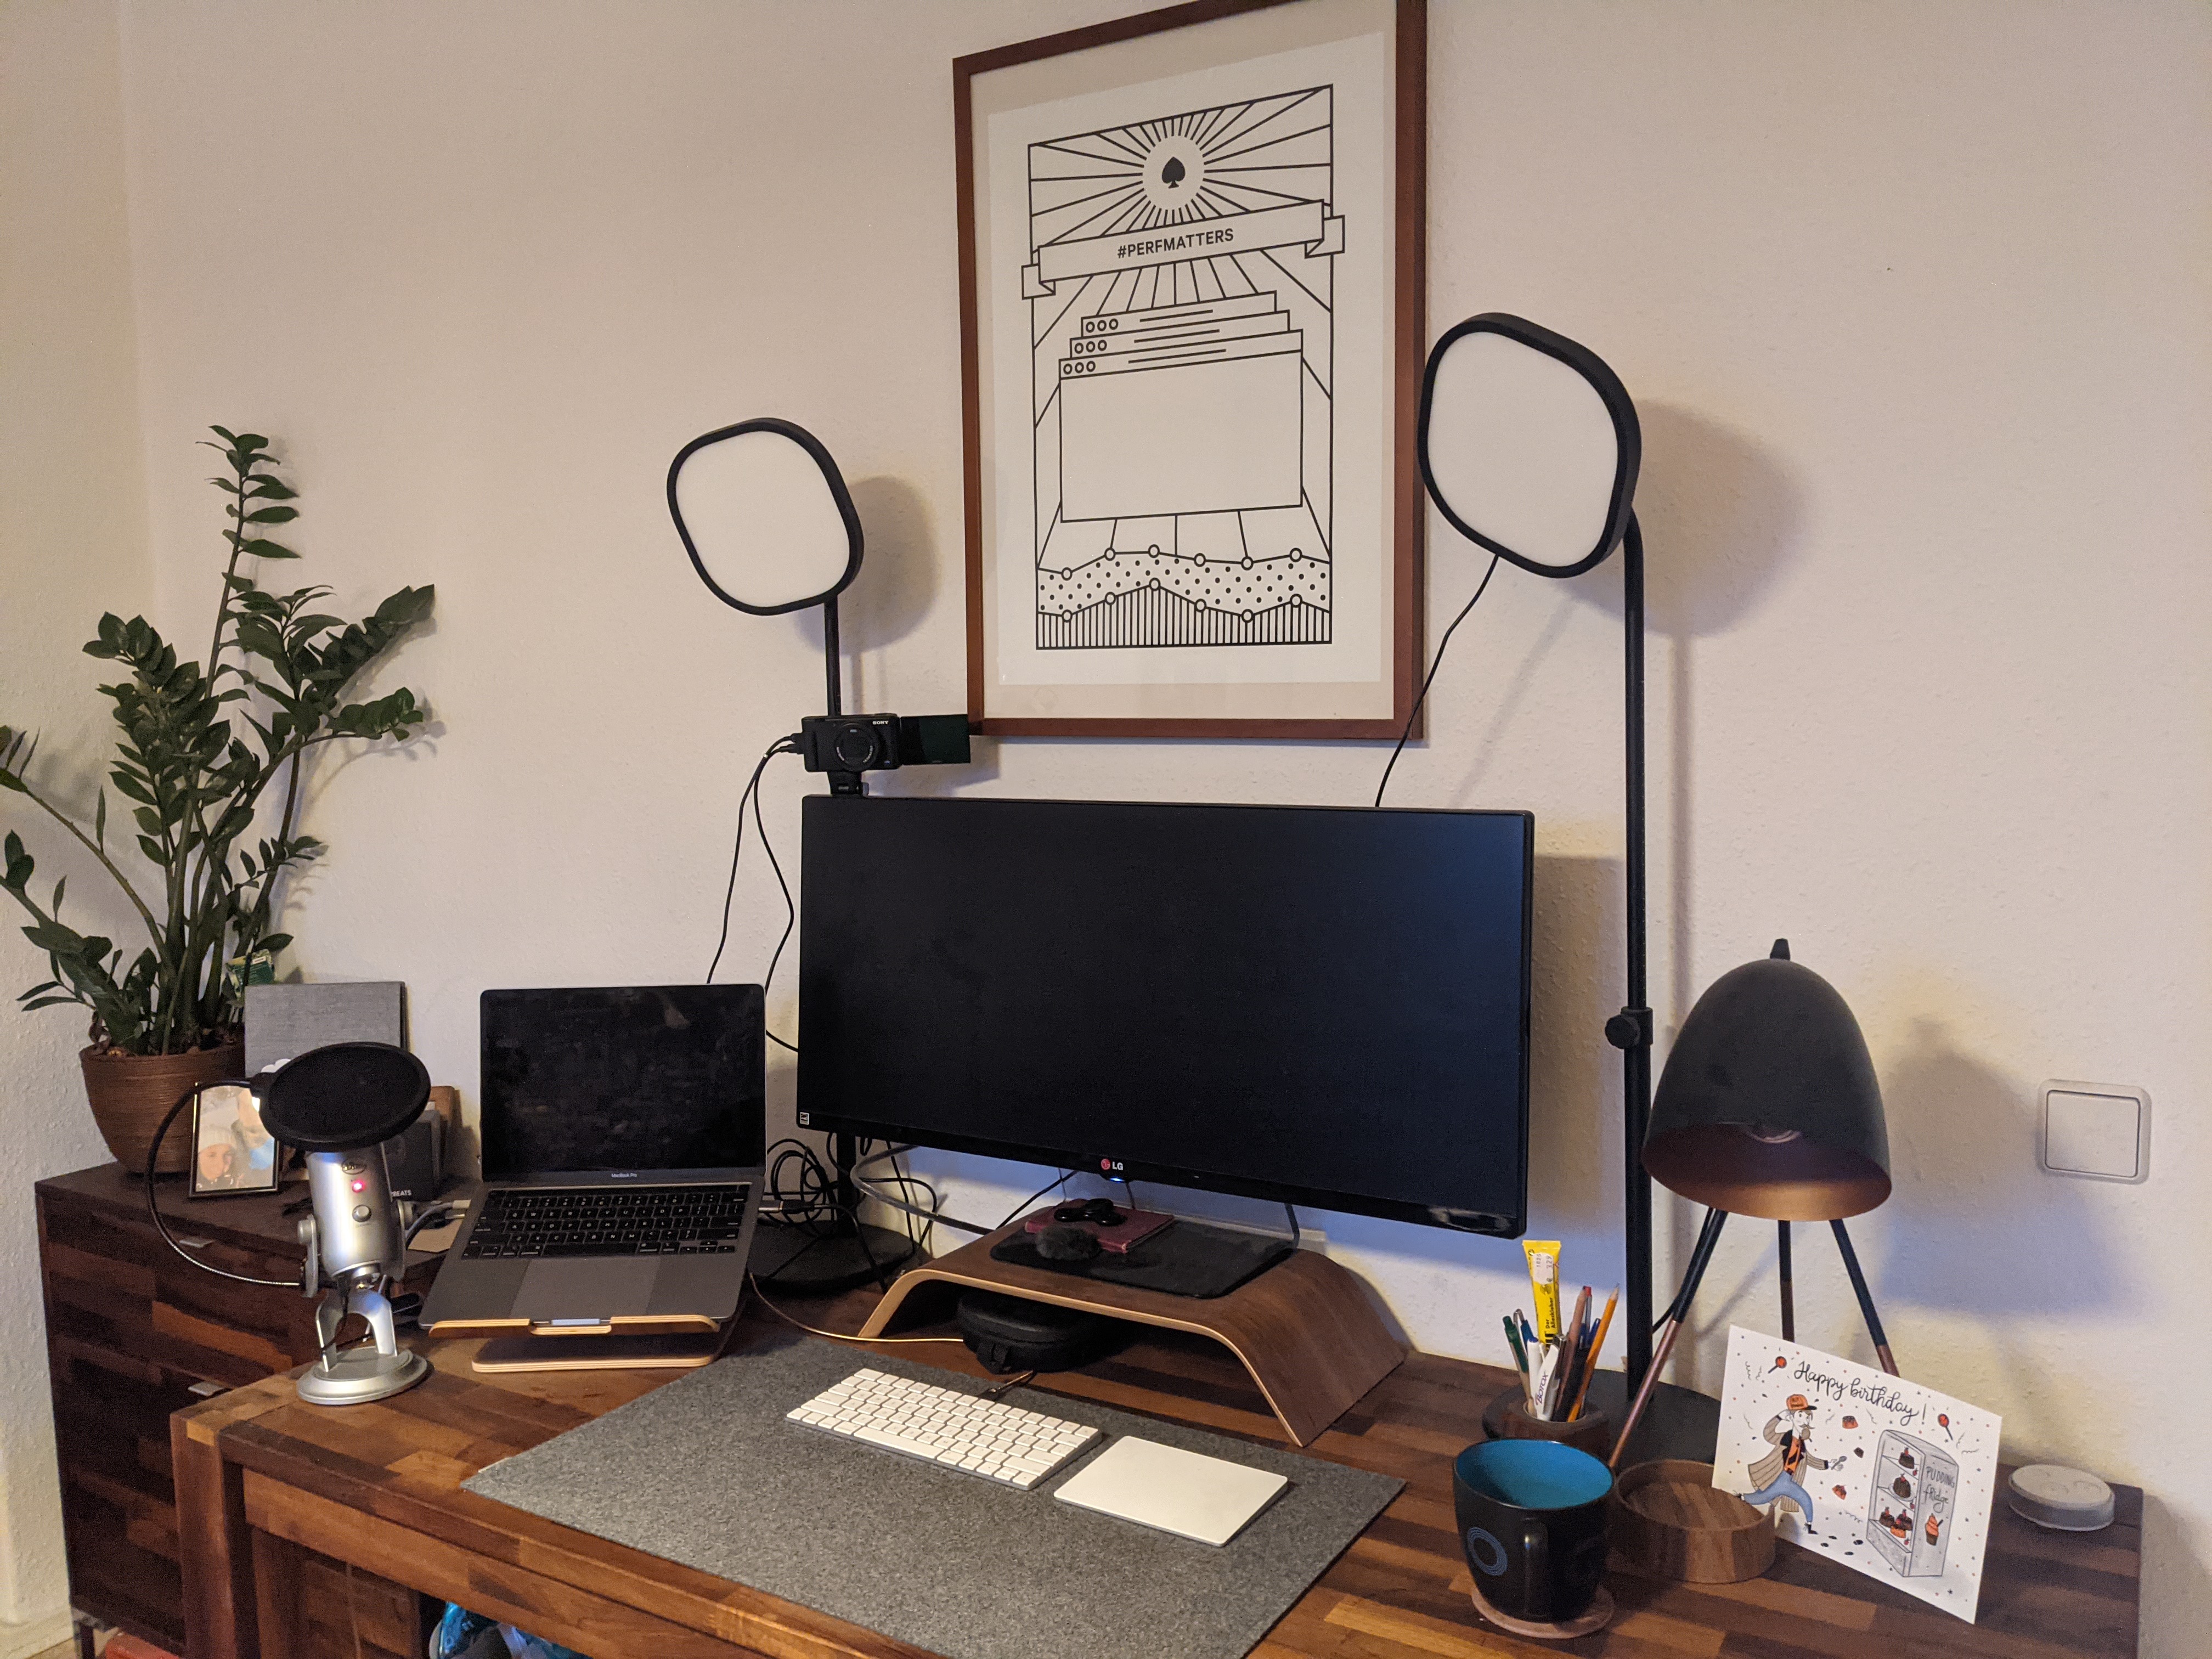 Stefan's desk setup